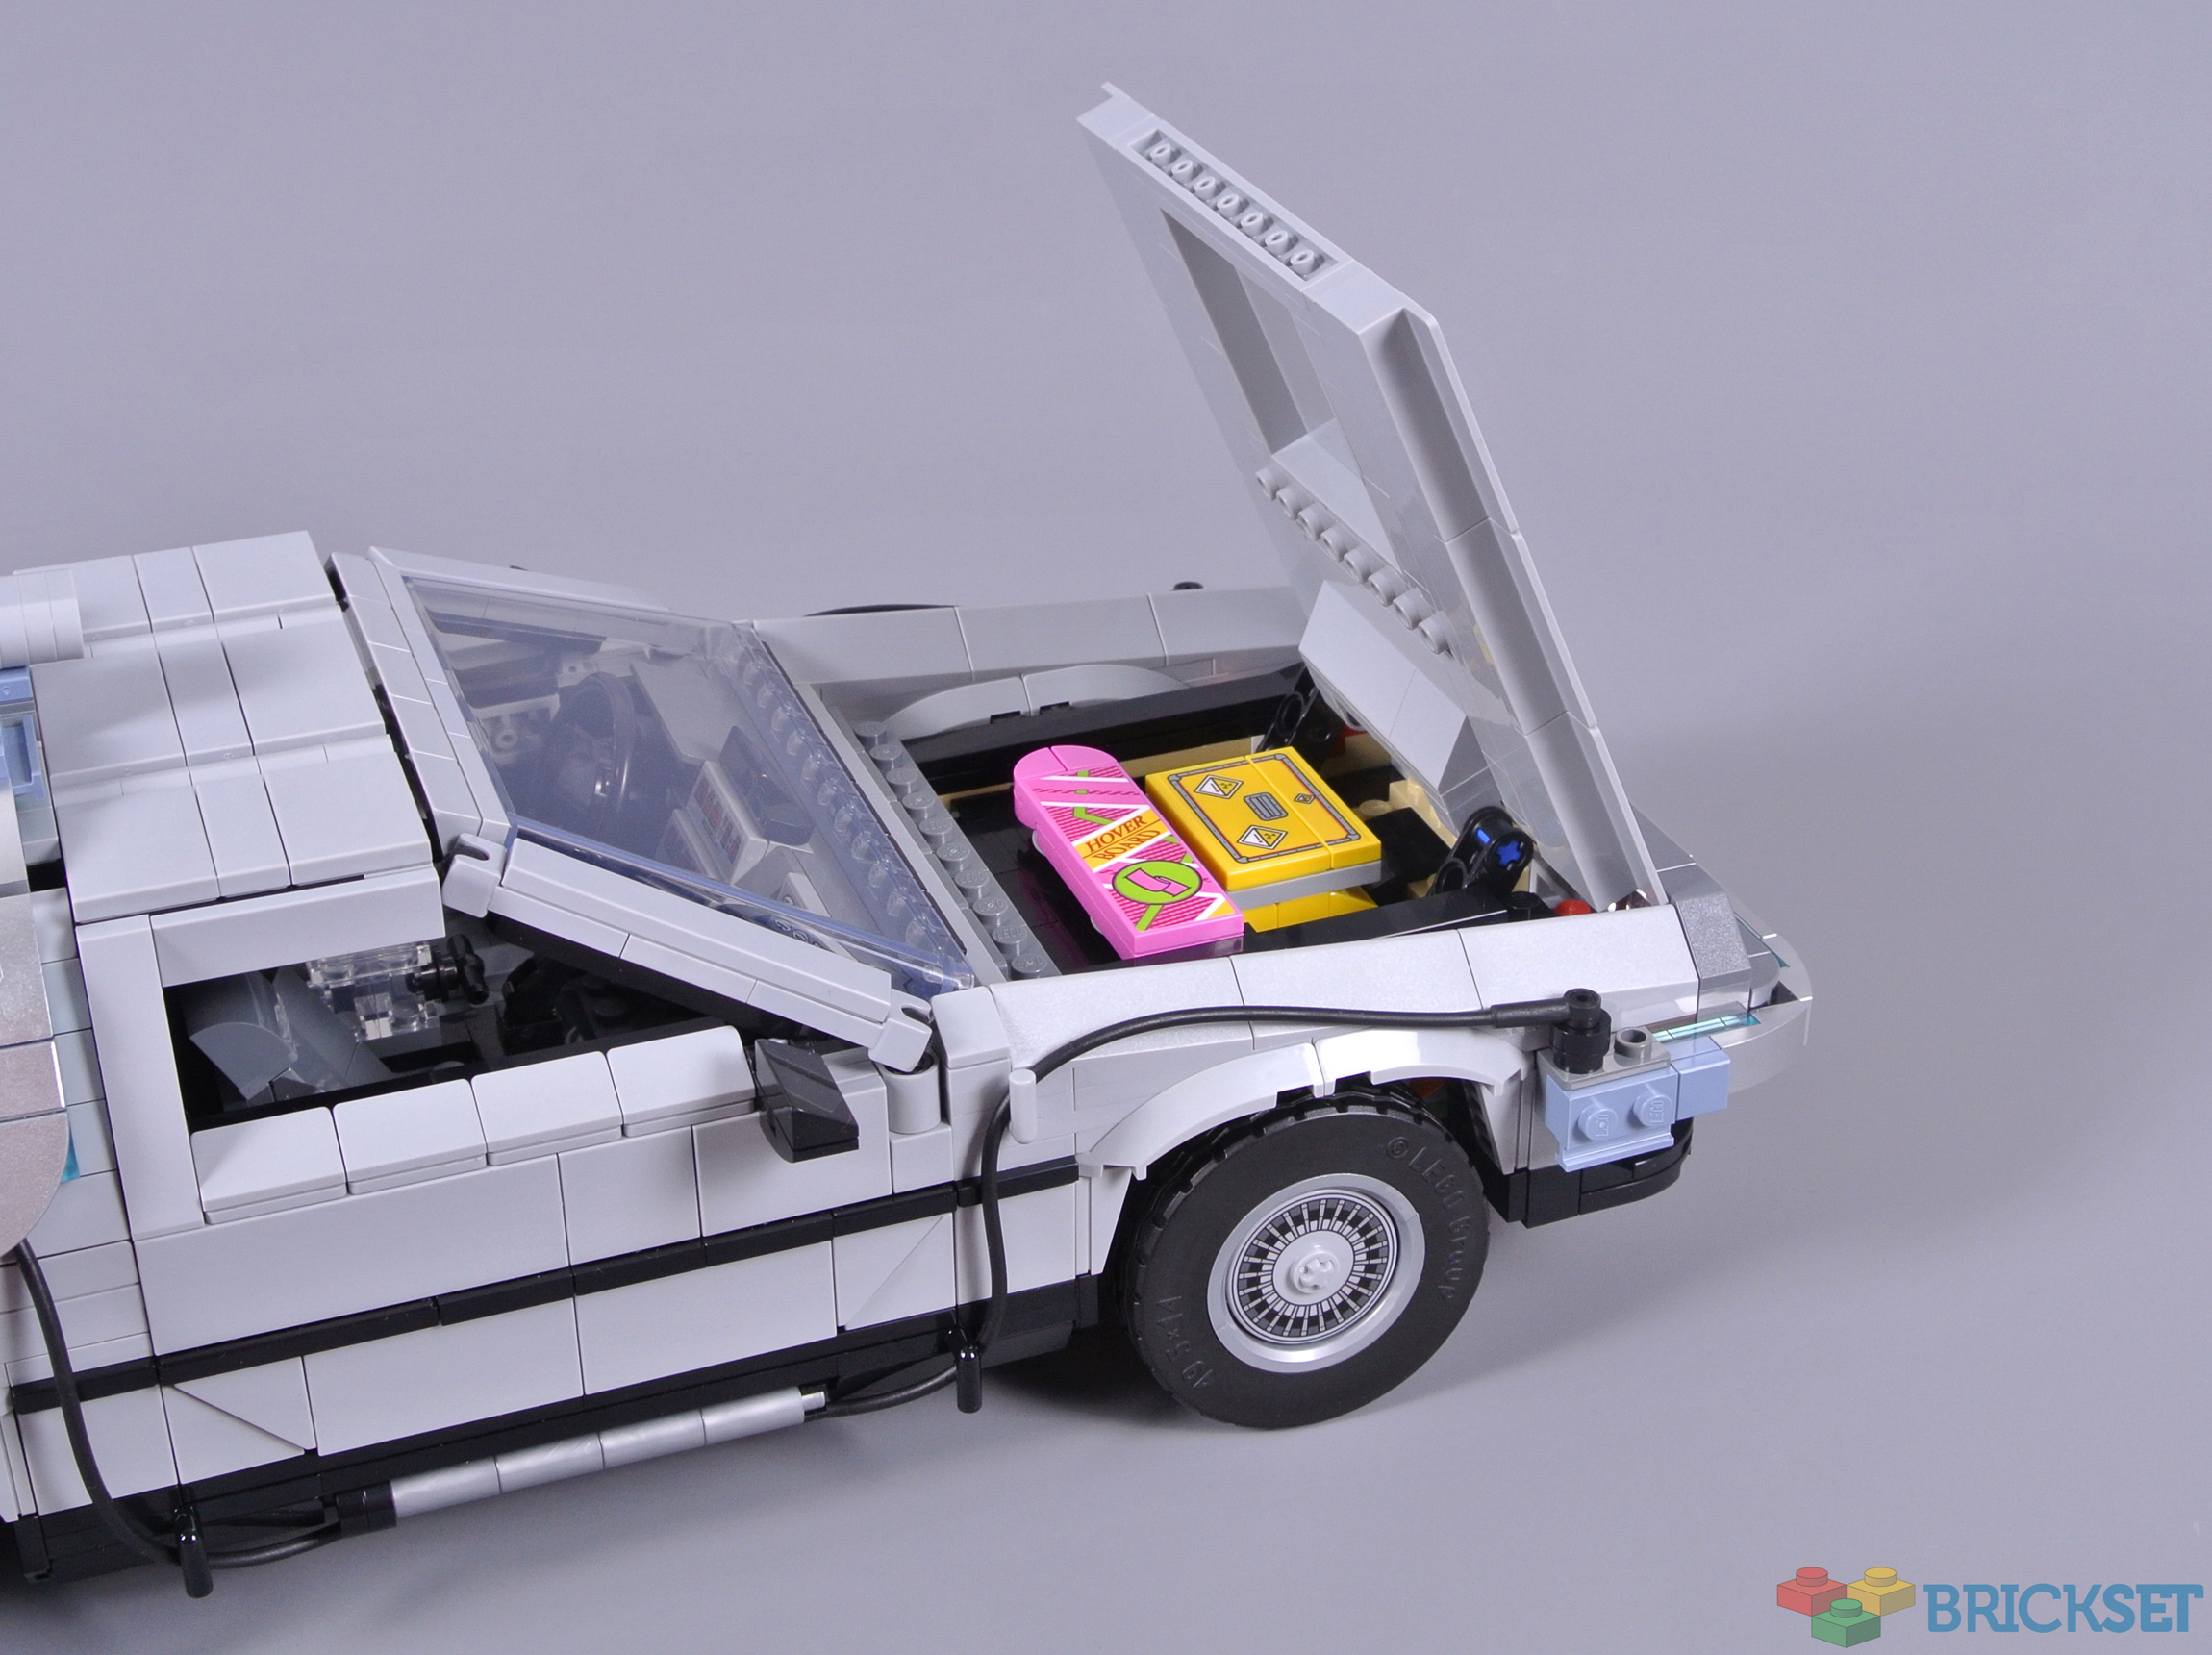 LEGO IDEAS - Back to the Future(BTTF) - DeLorean Time Machine